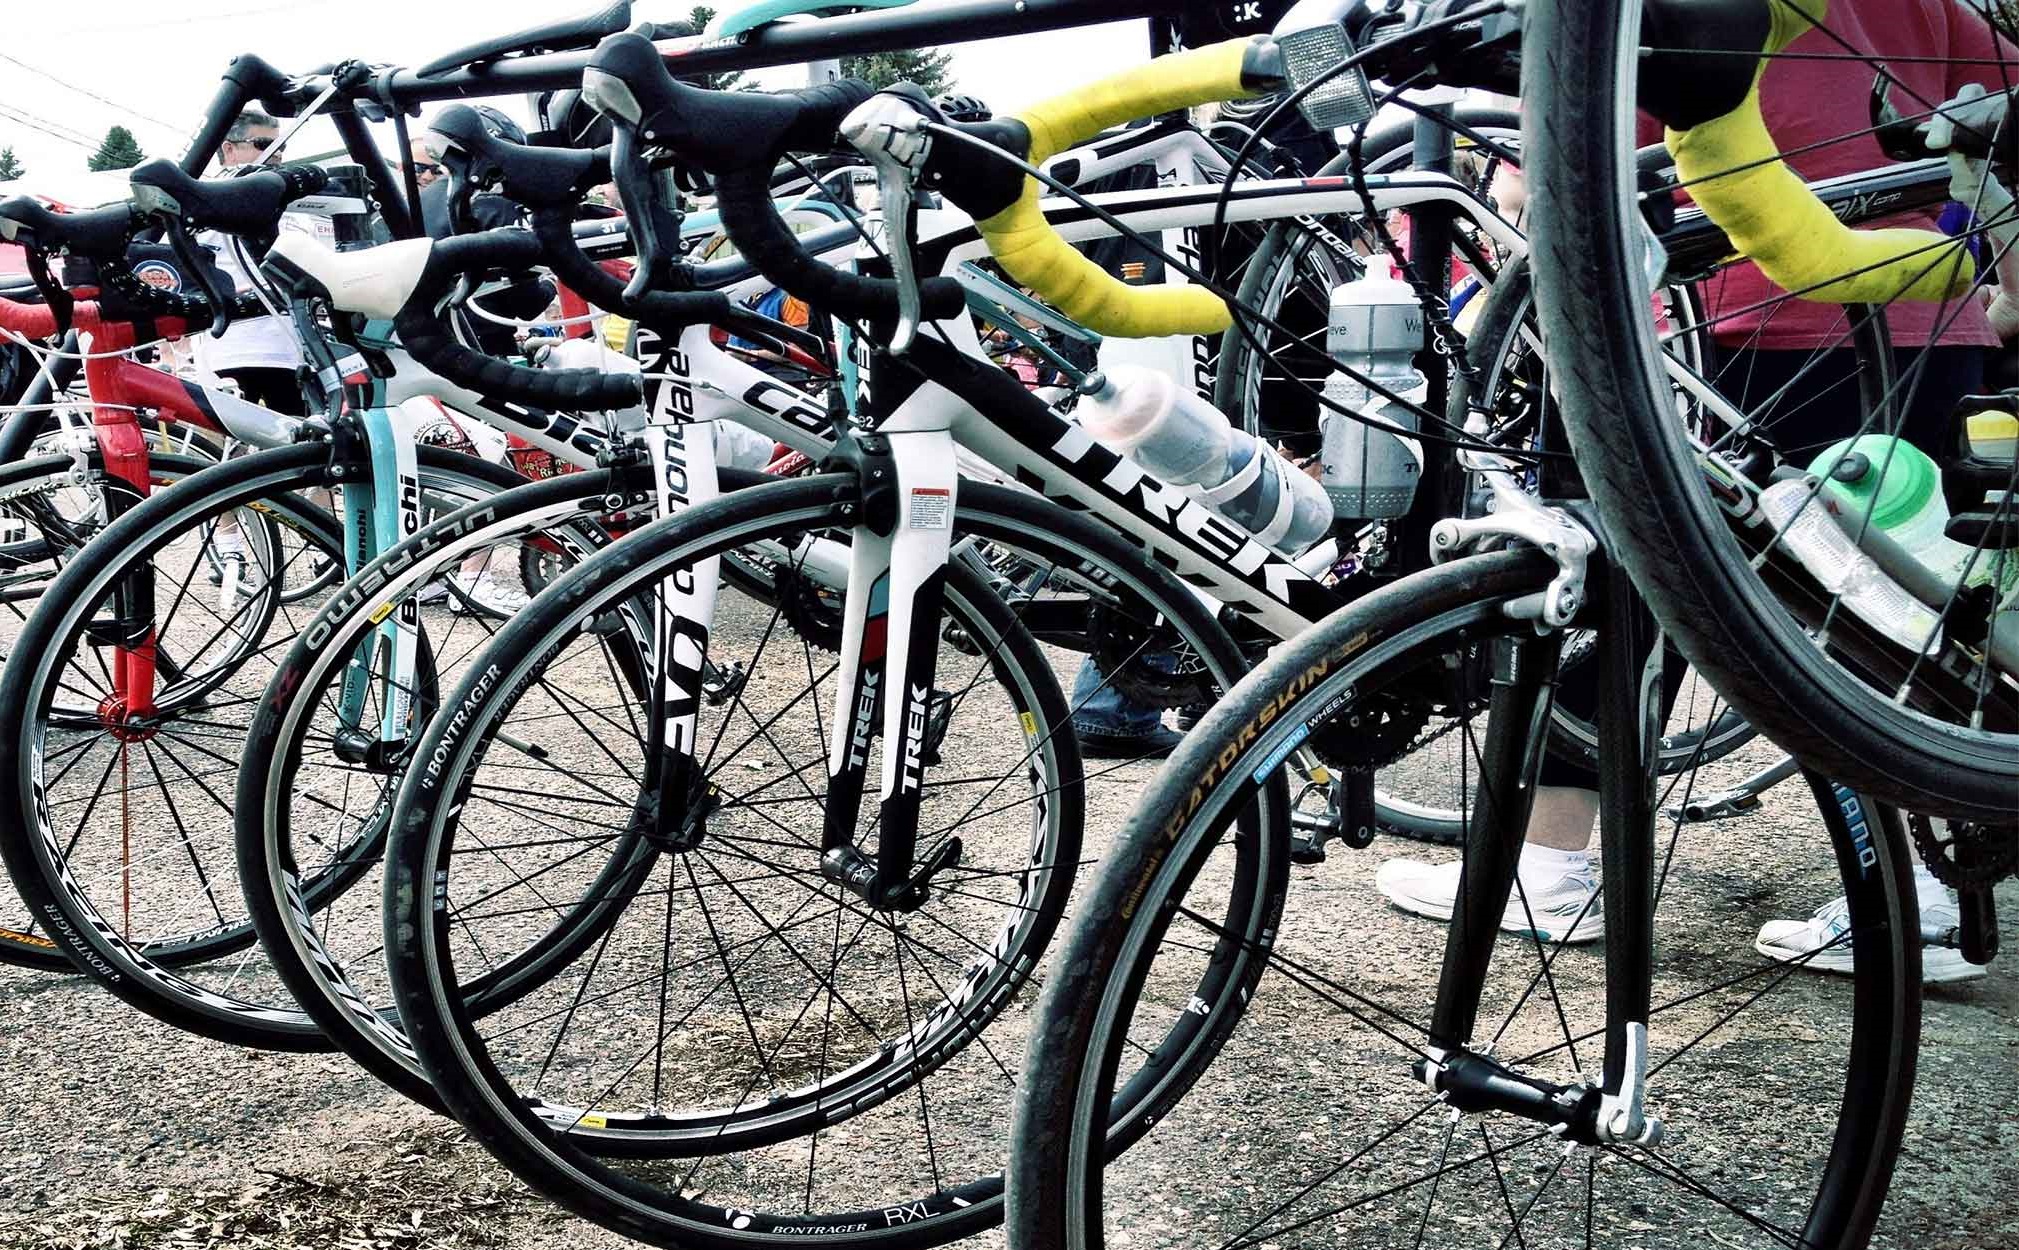 دوچرخه های چینی صنعت حمل و نقلِ سبز کشور را به انقراض می کشاند/ بودجه برای احیاء صنعت دوچرخه وجود ندارد؟